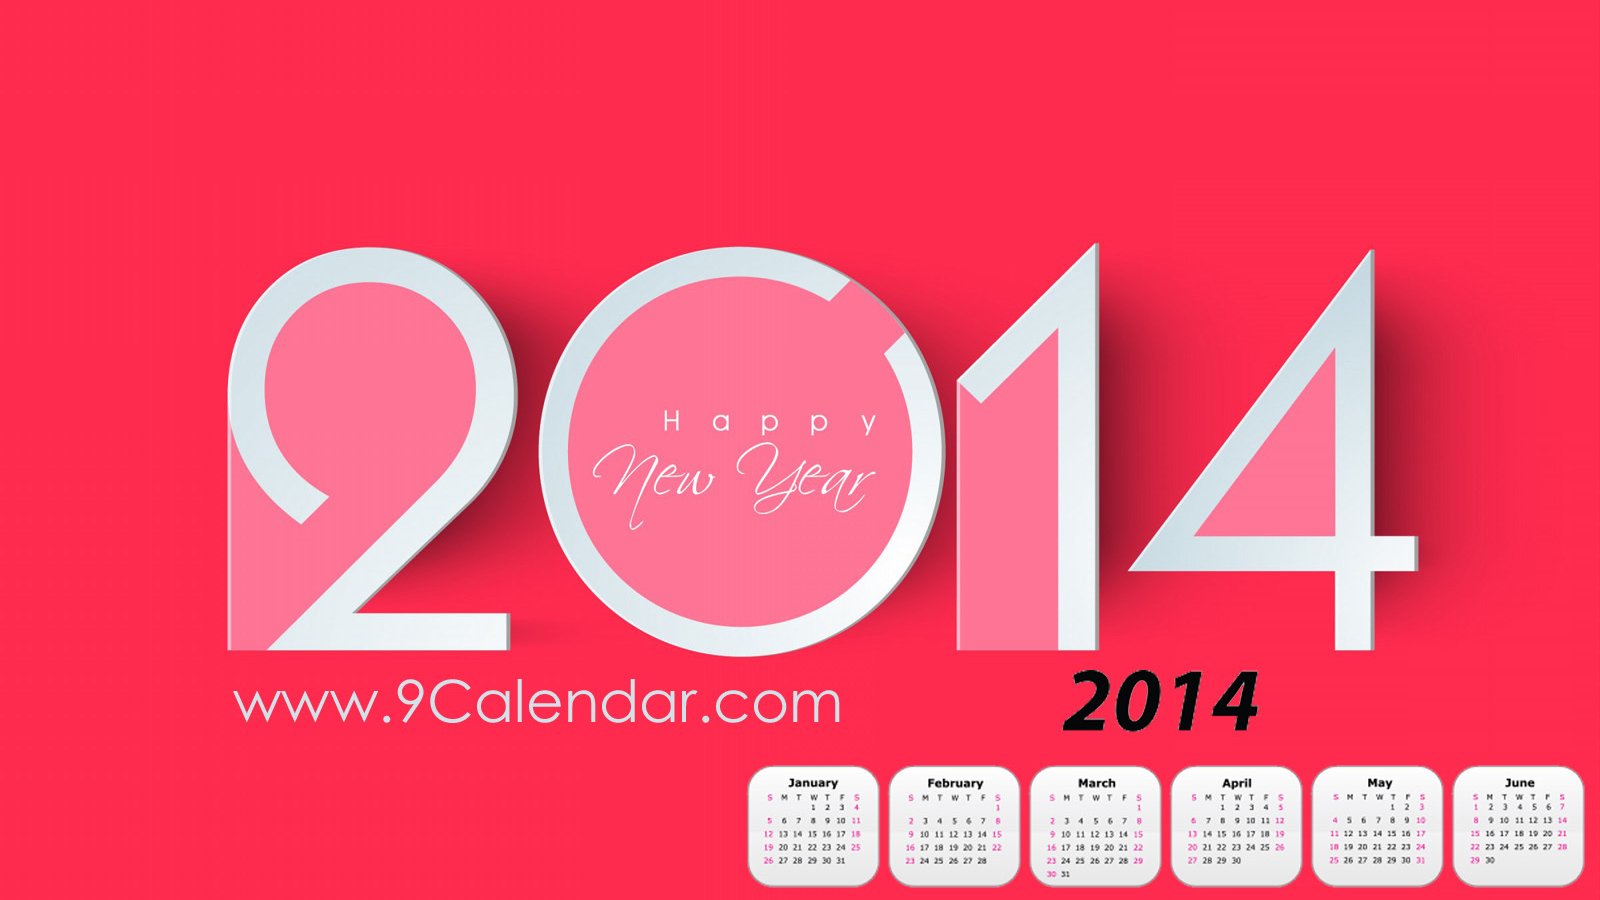 Счастливого Нового Года 2014, календарь